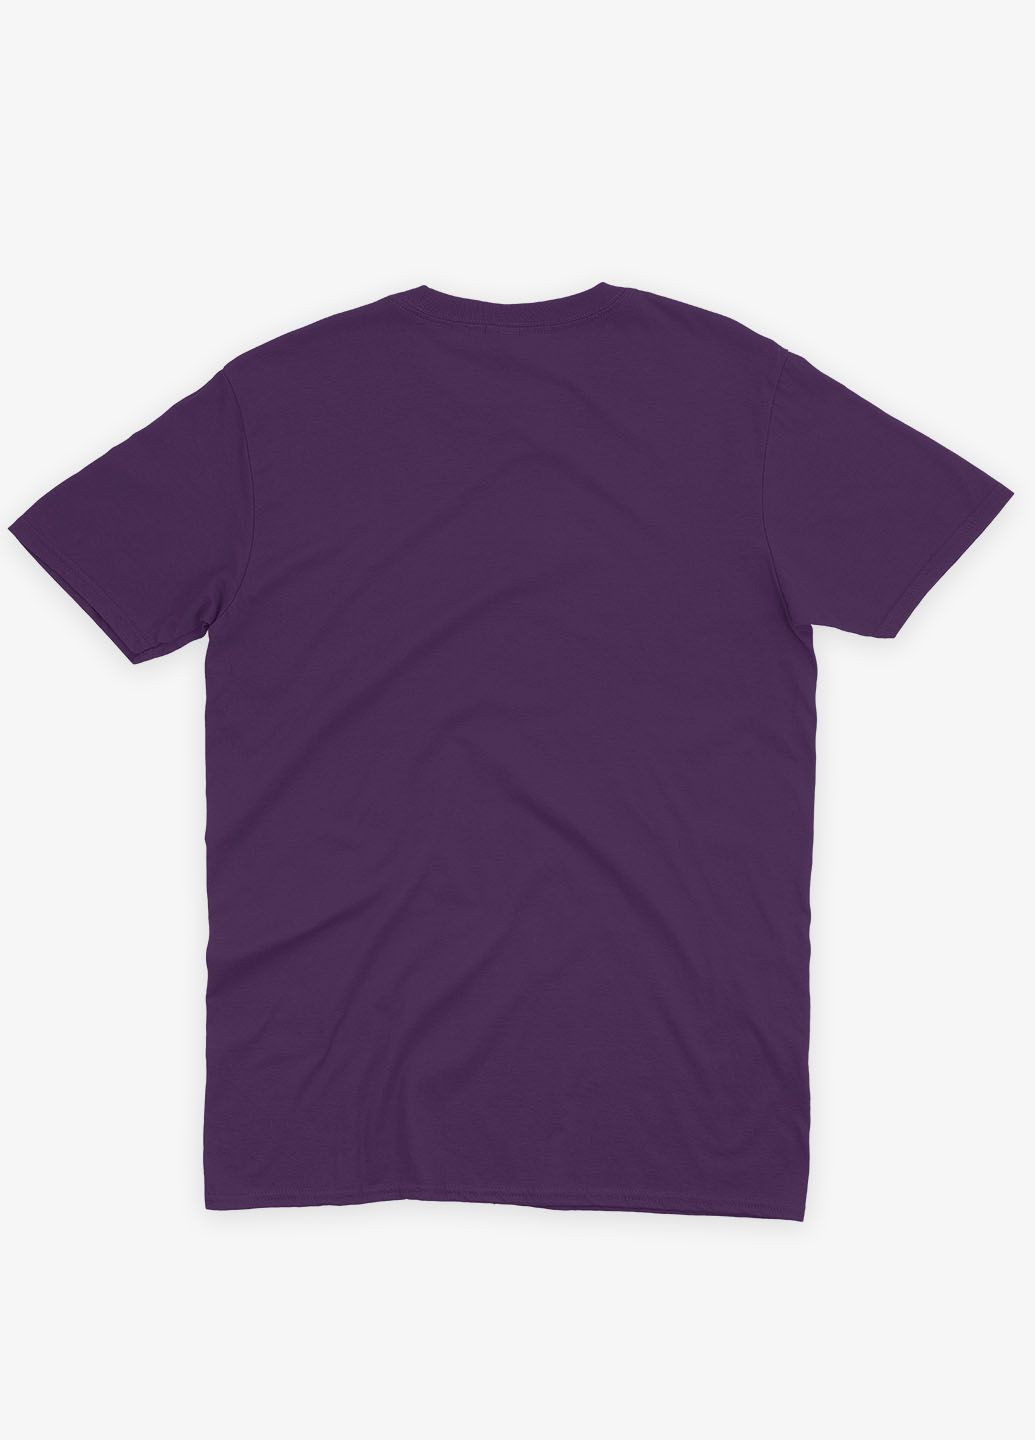 Фиолетовая демисезонная футболка для девочки с принтом супергероя - человек-паук (ts001-1-dby-006-014-002-g) Modno